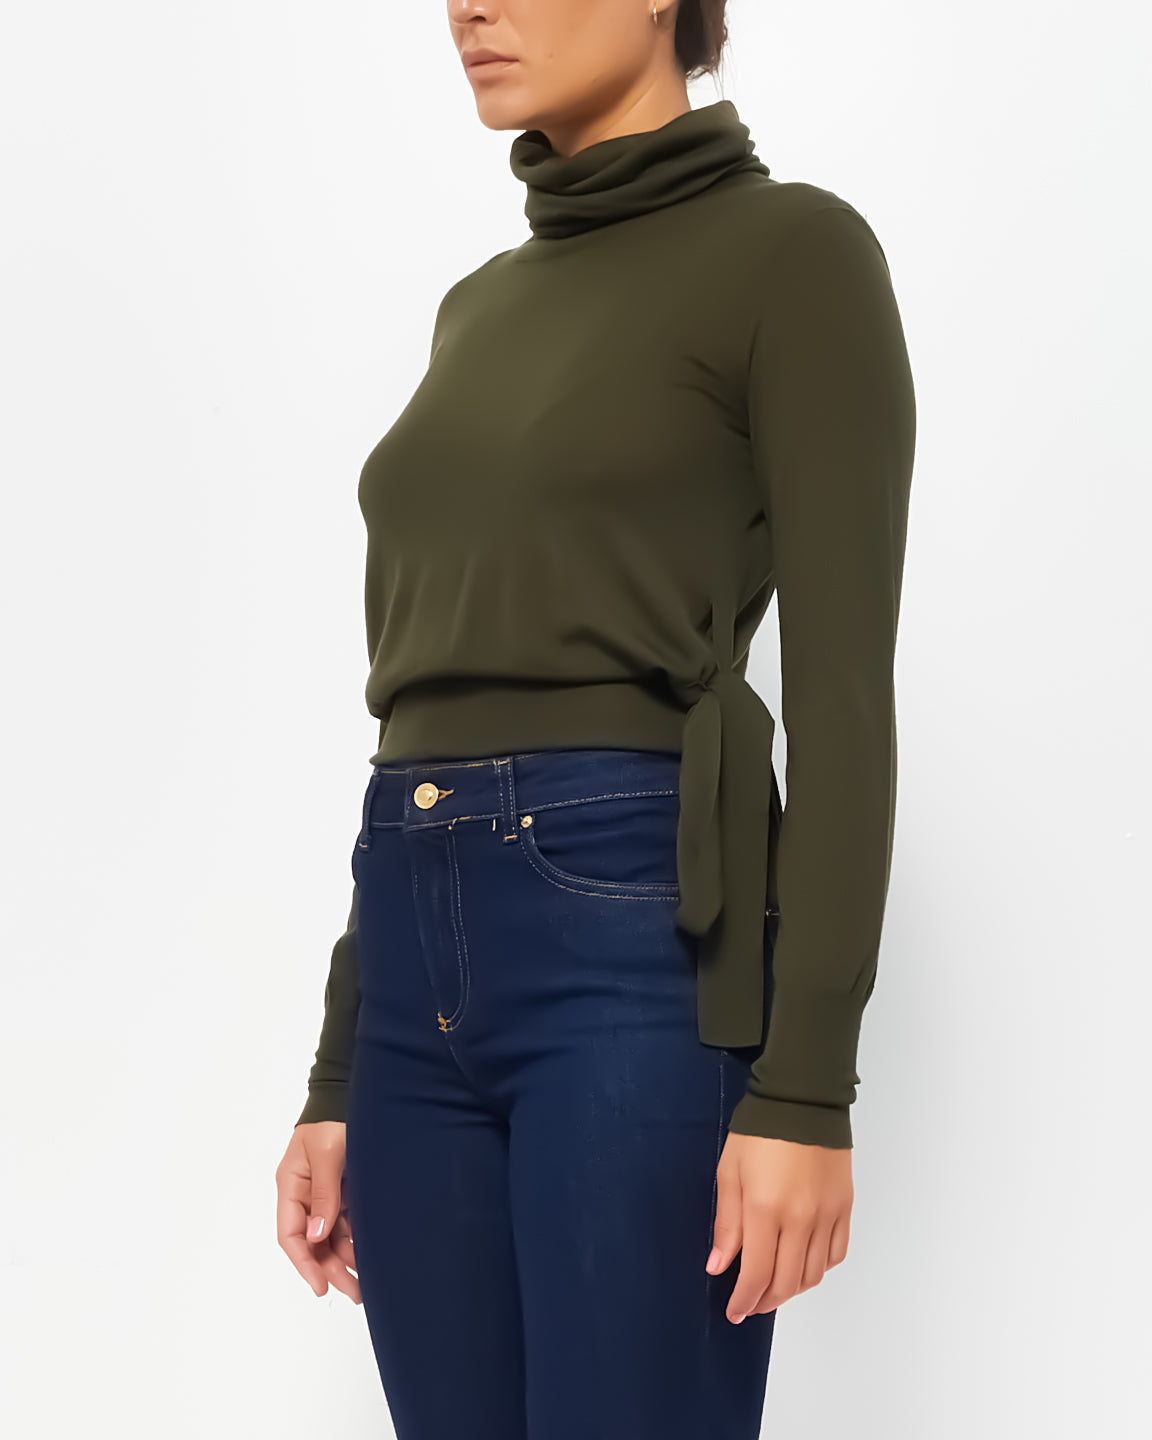 Chanel Army Green Wool Turtleneck Belt Tie Sweater - 40